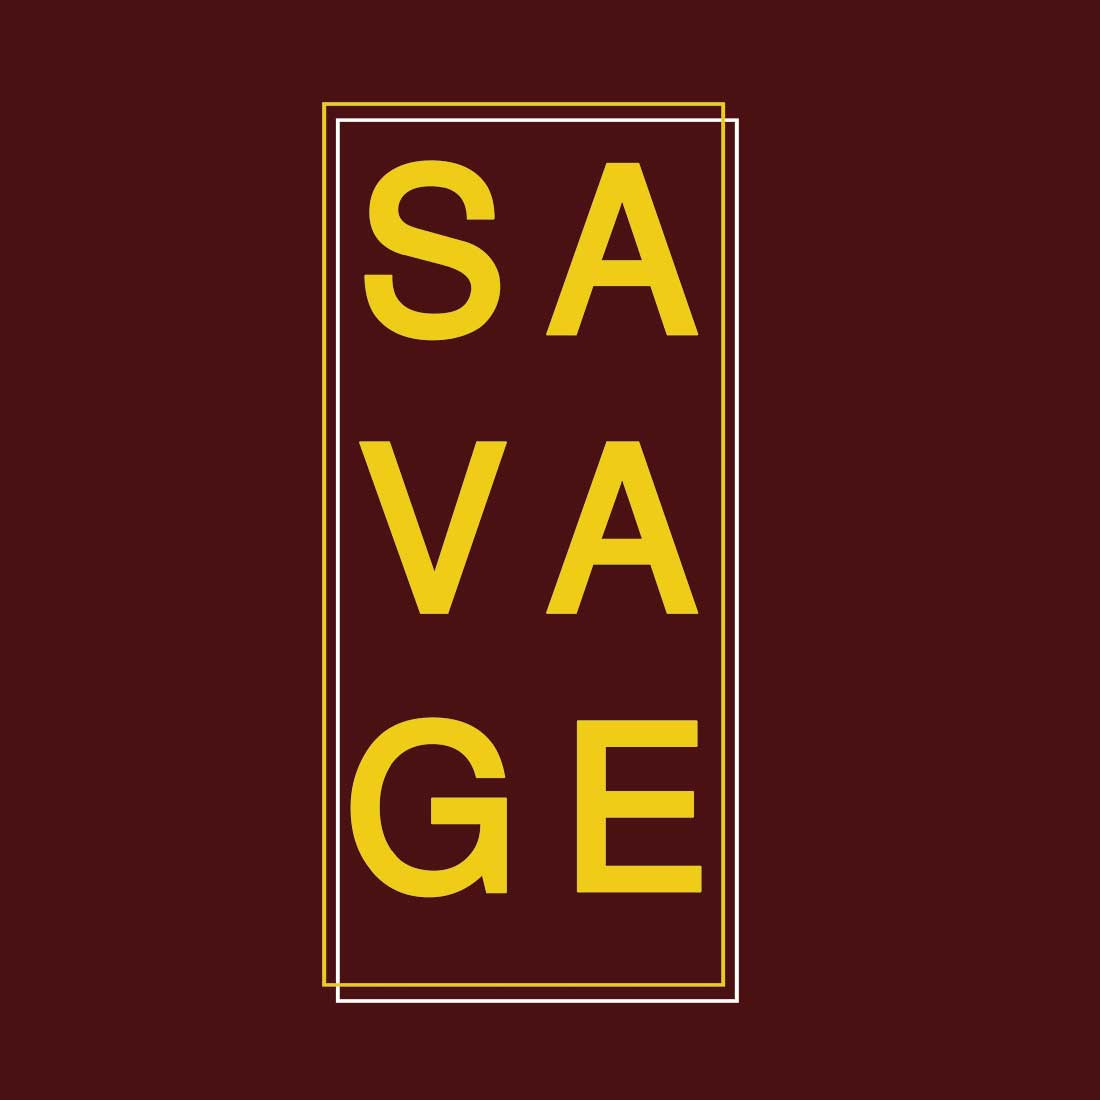 Savage Maroon Men T-Shirt